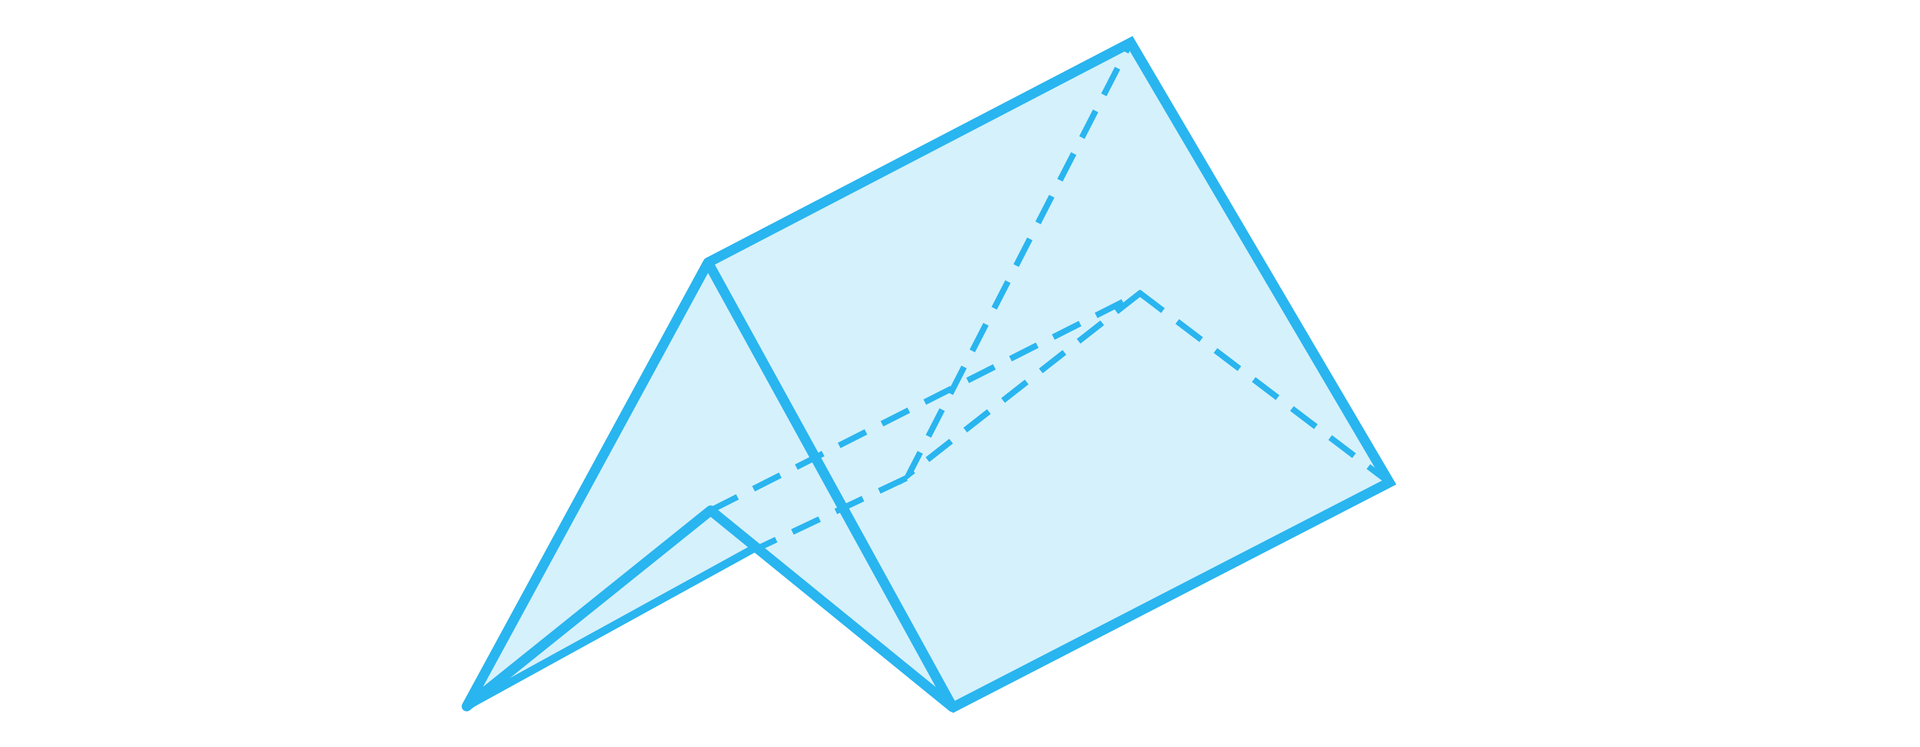 Ilustracja przedstawia model graniastosłupa o podstawie czworokąta wklęsłego w kształcie litery V.